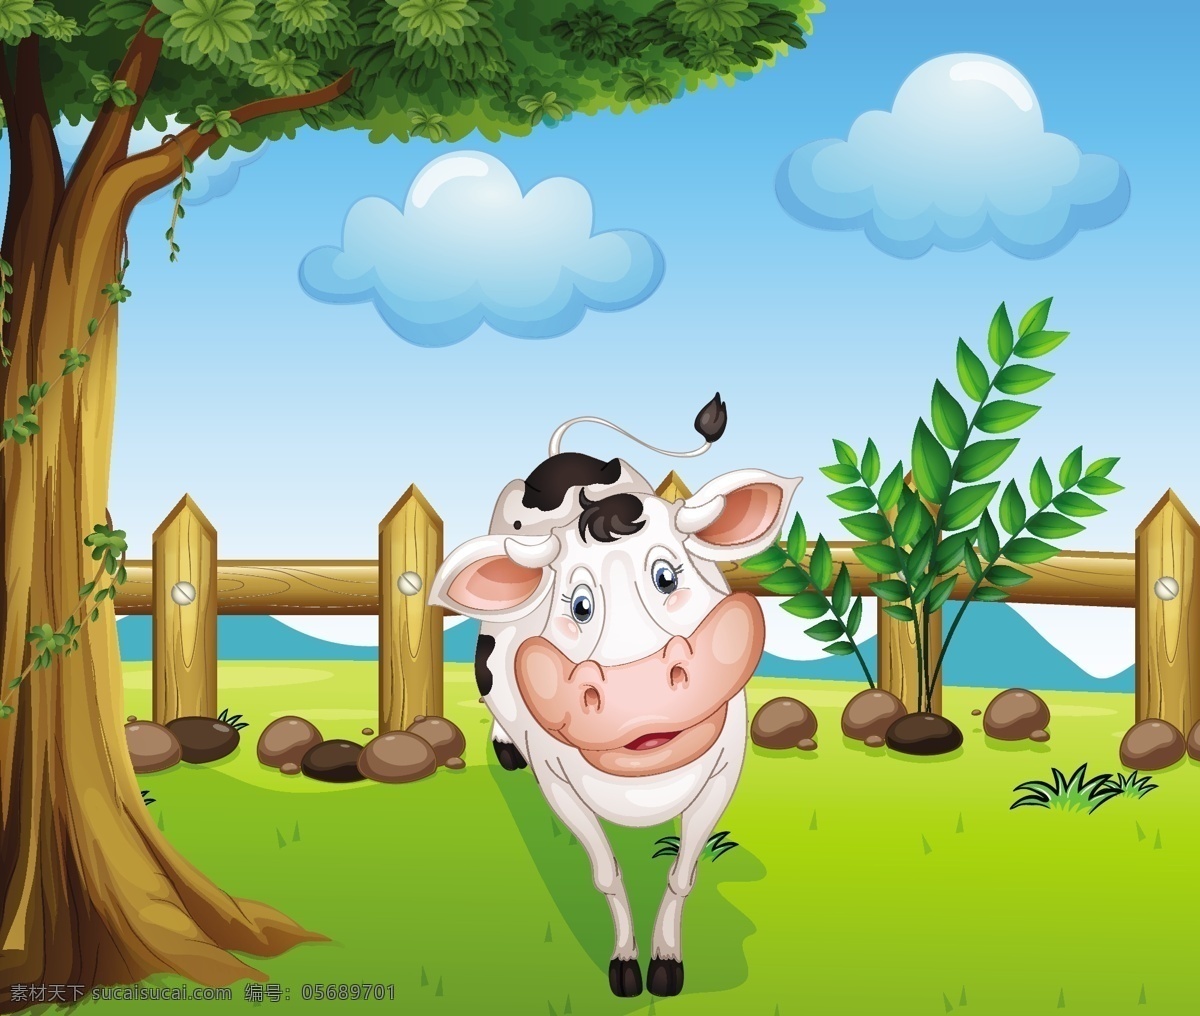 卡通奶牛 奶牛背景 奶牛 动物 产奶 牛奶 农业 卡通设计